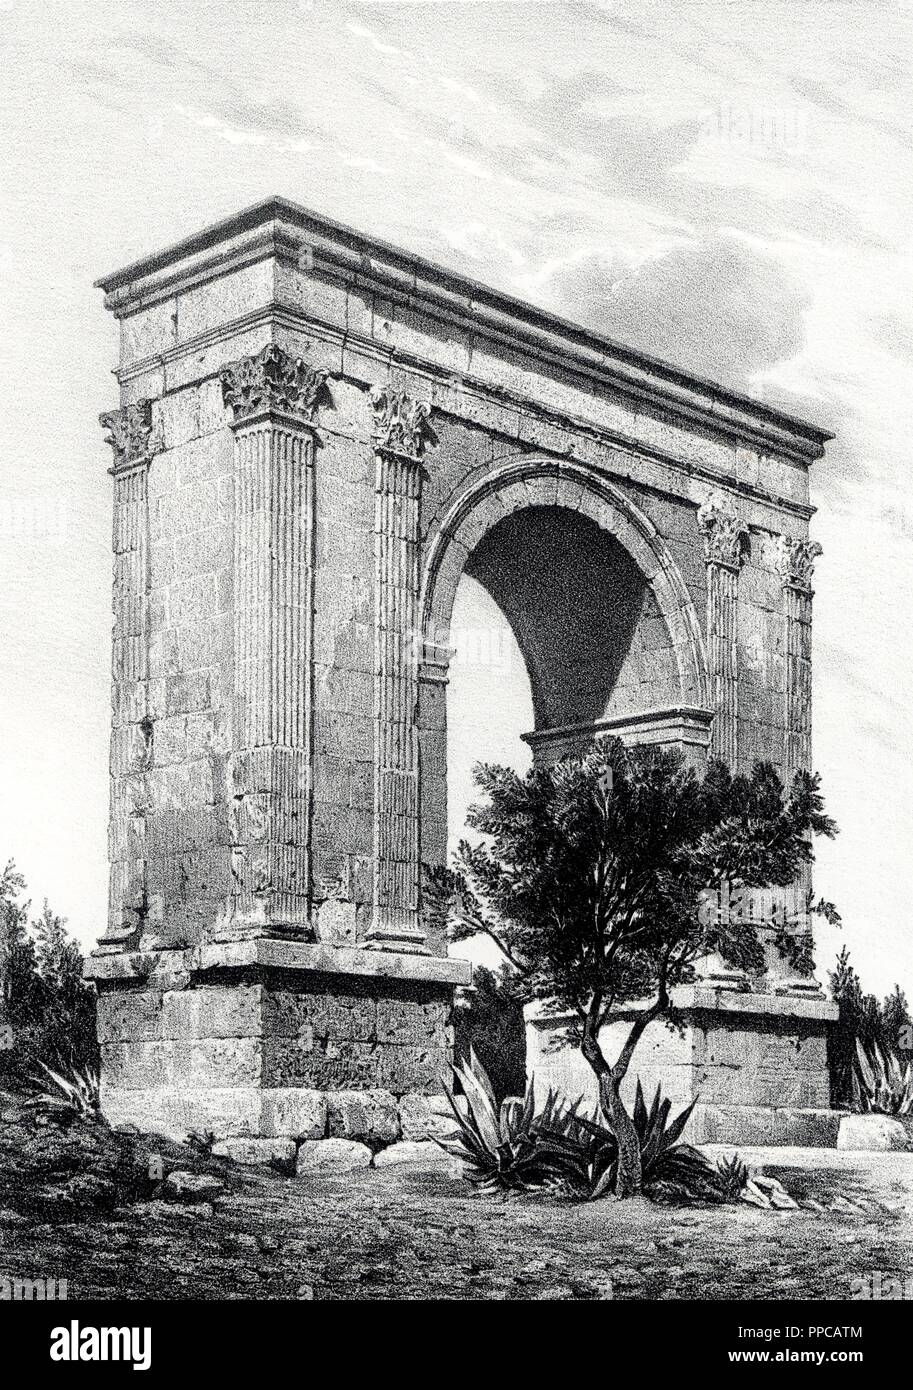 Historia. Arco de triunfo romano de Barà construido en Tarragona por Augusto el siglo i a. C.. Grabado de 1871. Stock Photo